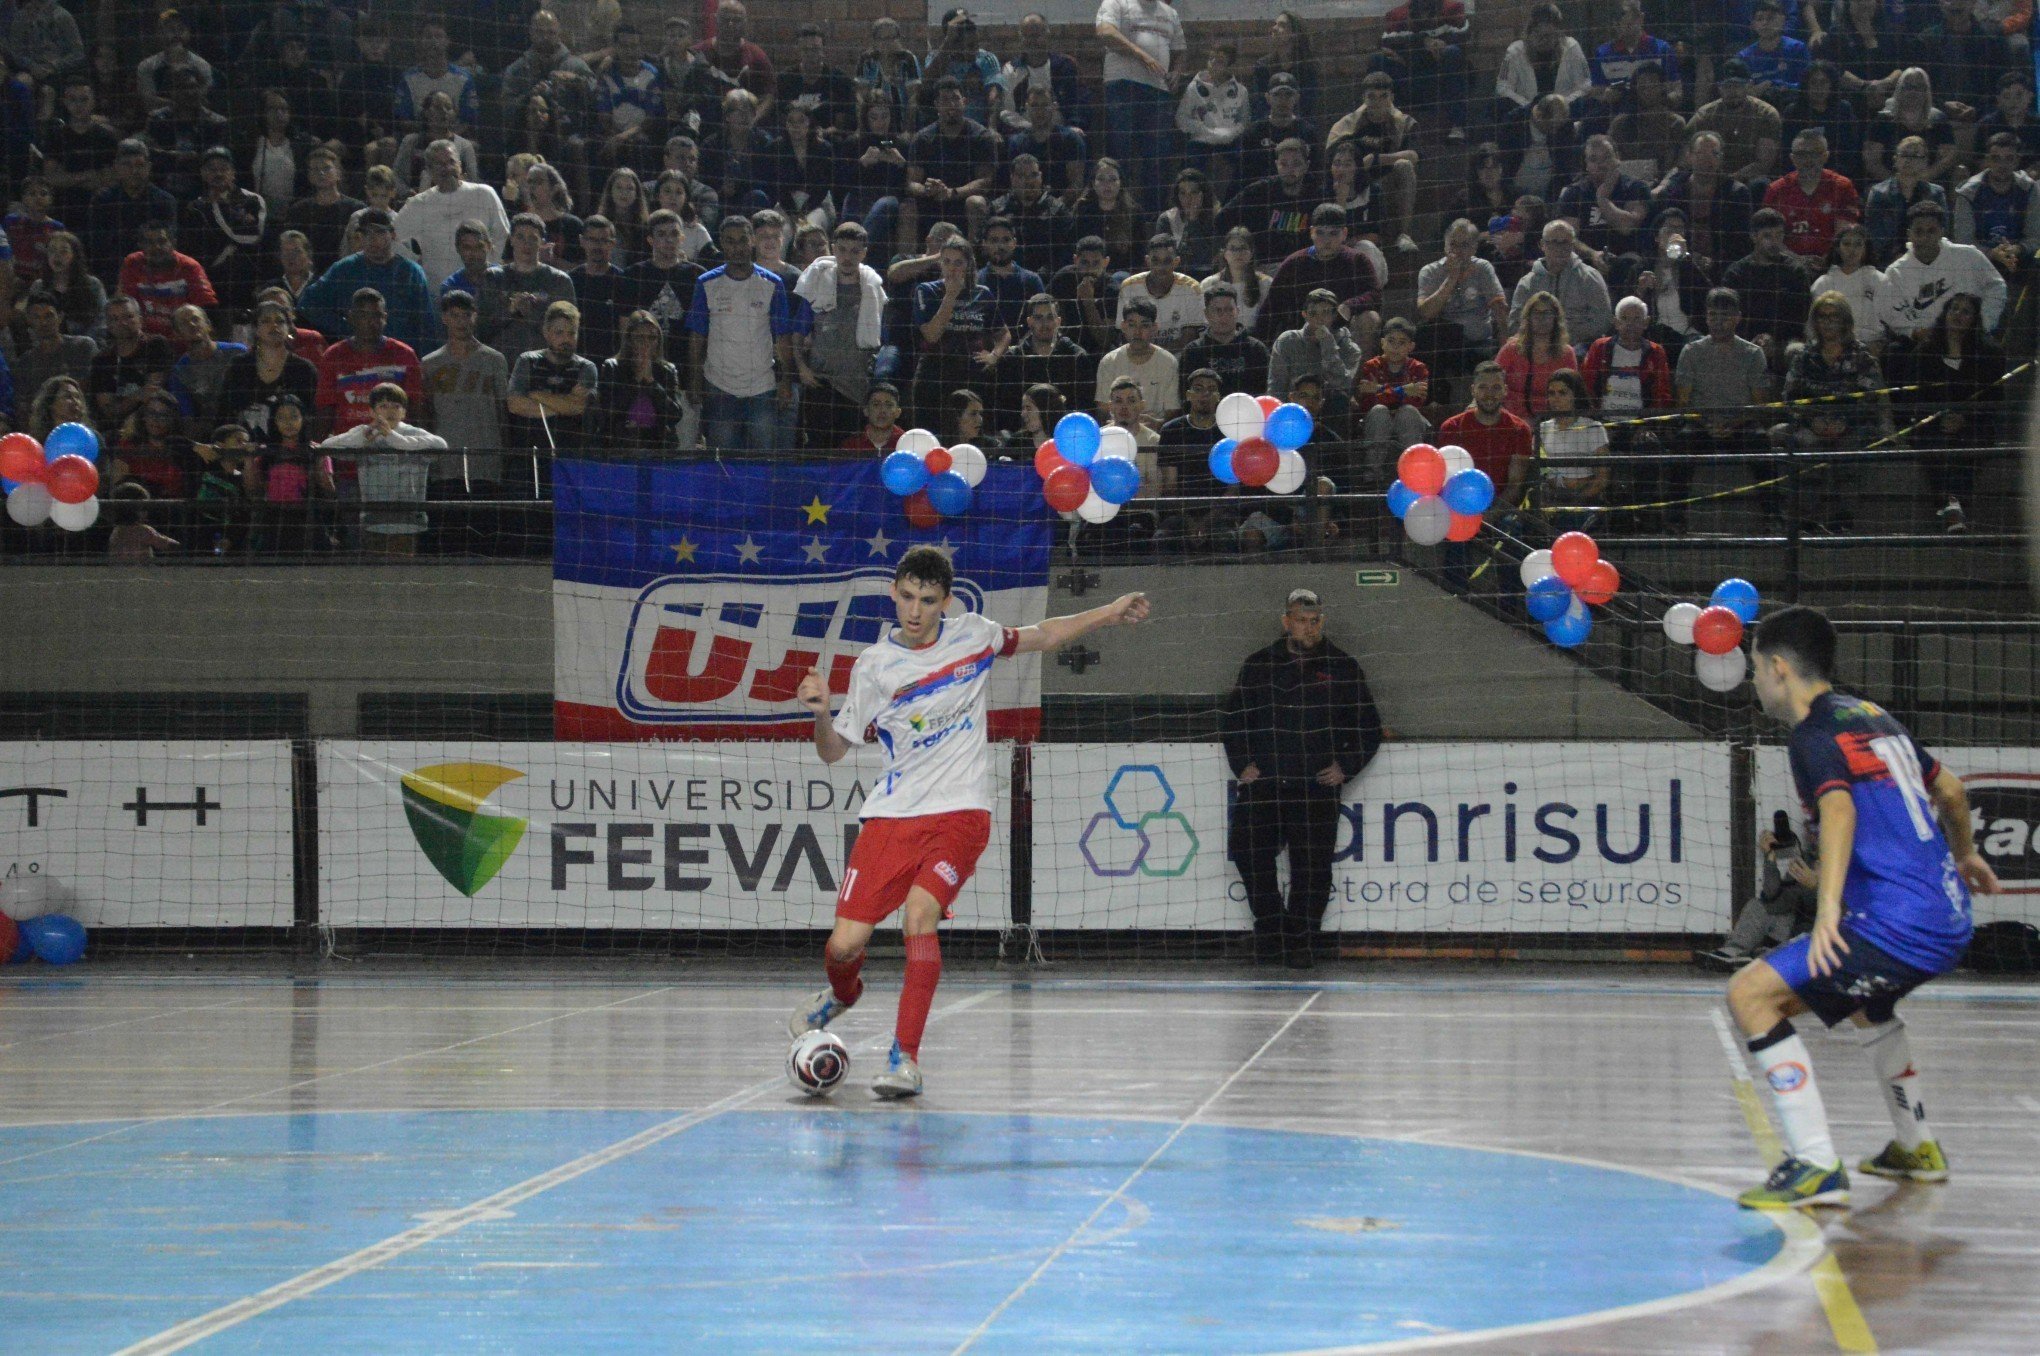 UJR/Feevale/Banrisul encaminha atleta e treinador para a Liga Nacional de Futsal